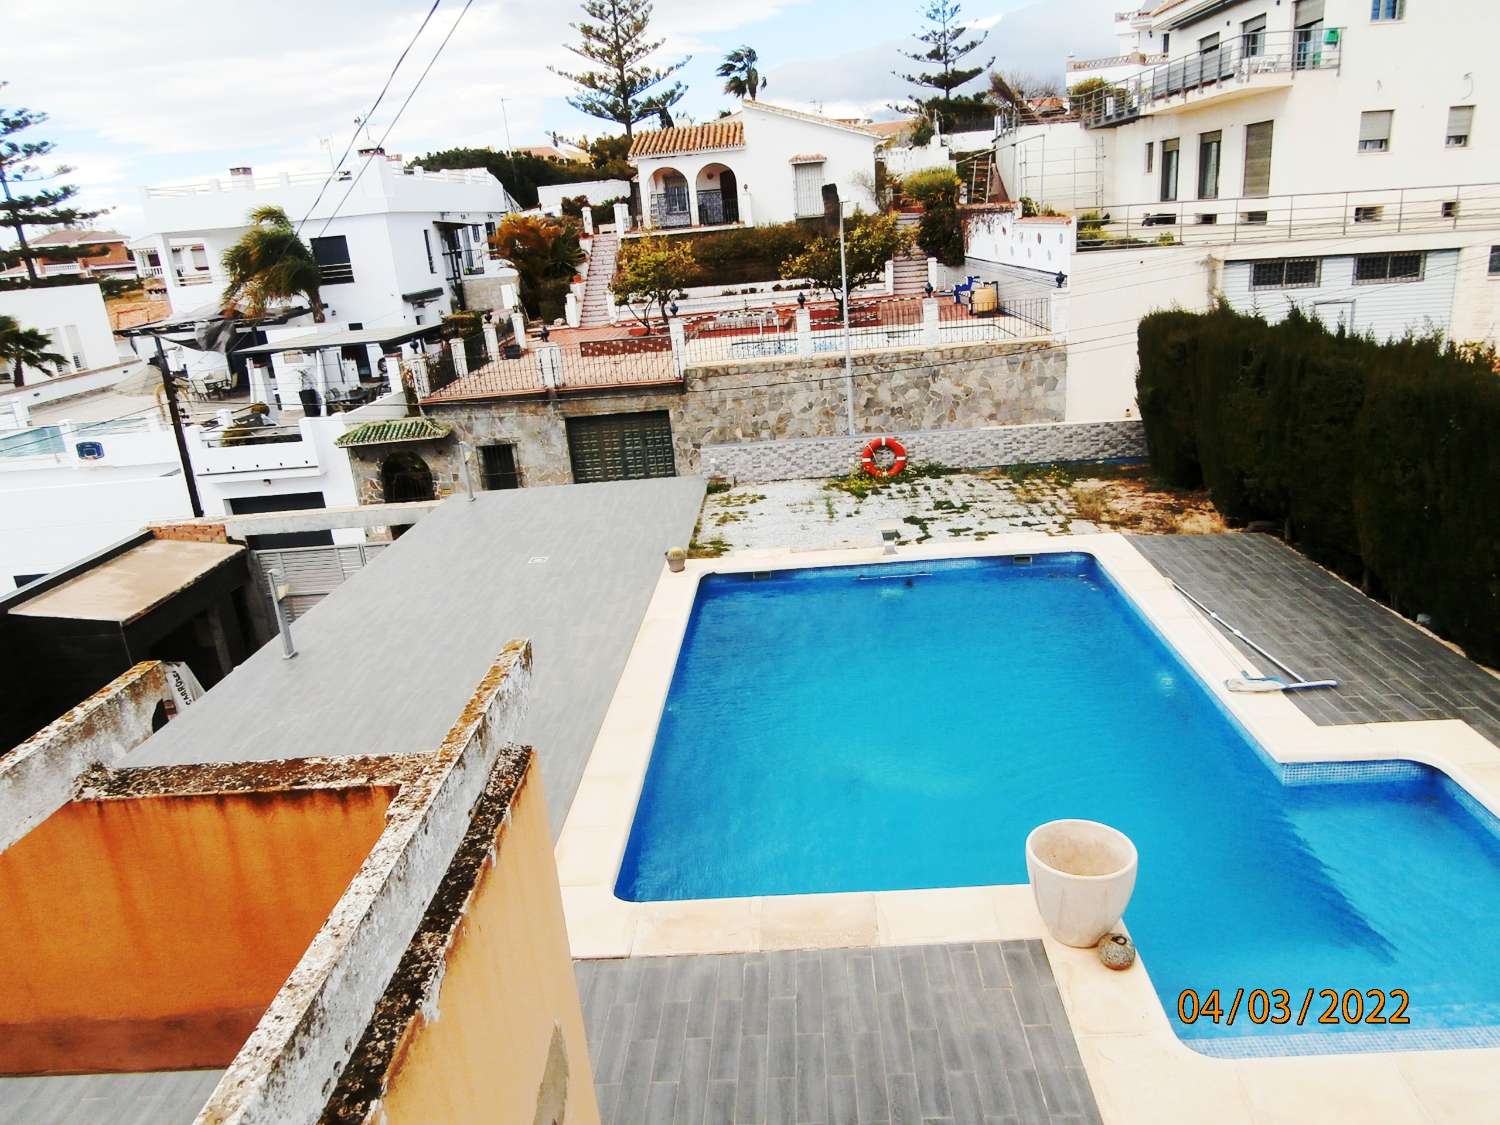 Villa independiente con piscina, vistas al mar, gran potencial, necesita varias terminaciones, PRECIO ORIGINAL 540.000€.